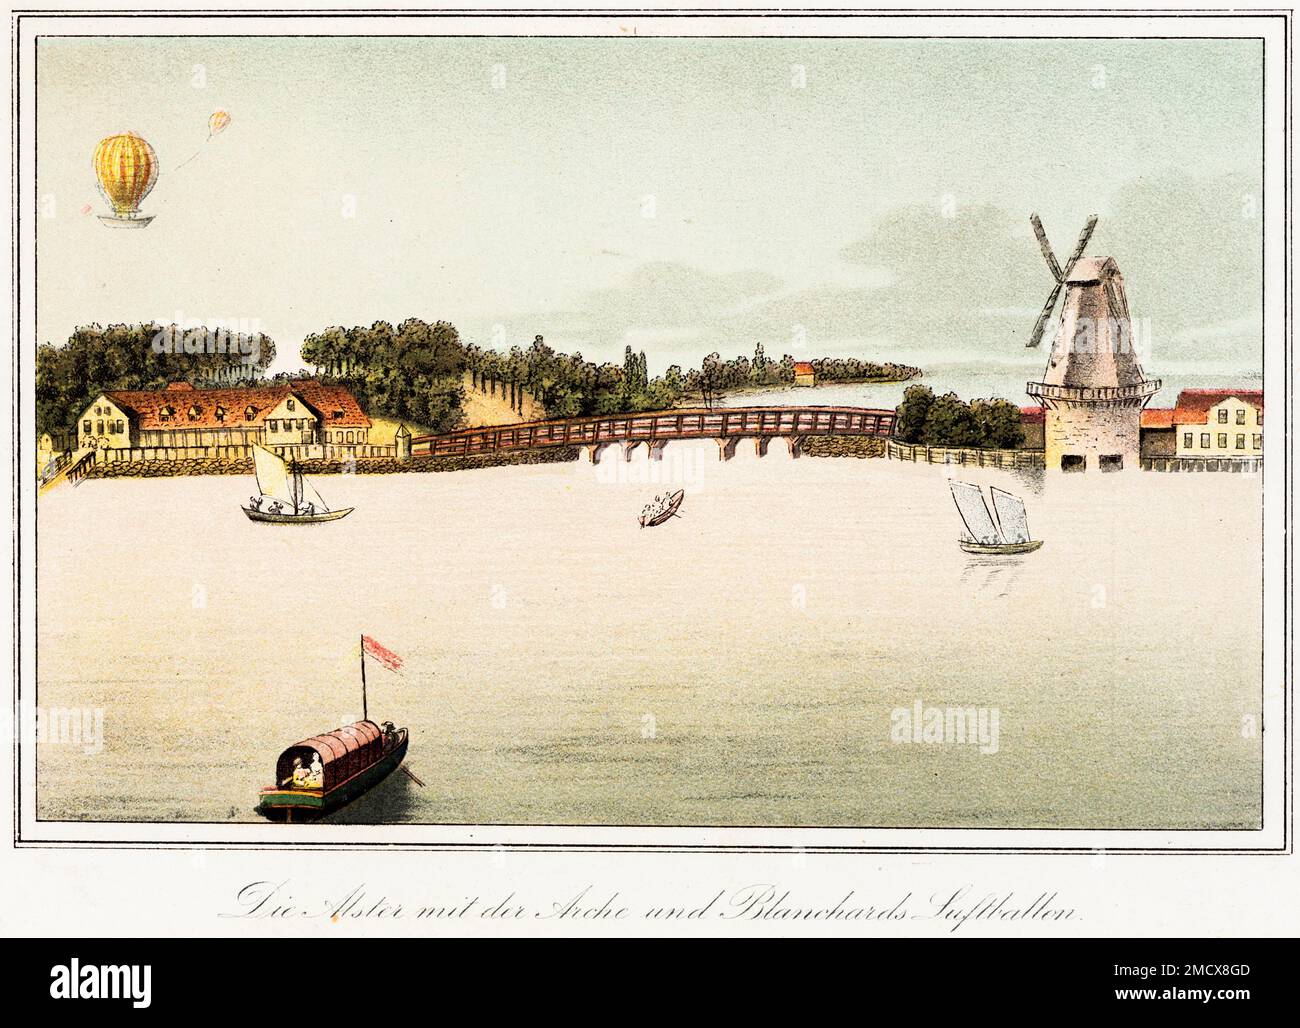 Drôle vieux Hambourg, Alster, montgolfière, bateaux à voile, moulin à vent, pont en bois, bâtiments, maisons, coloré, forêt, illustration historique Banque D'Images